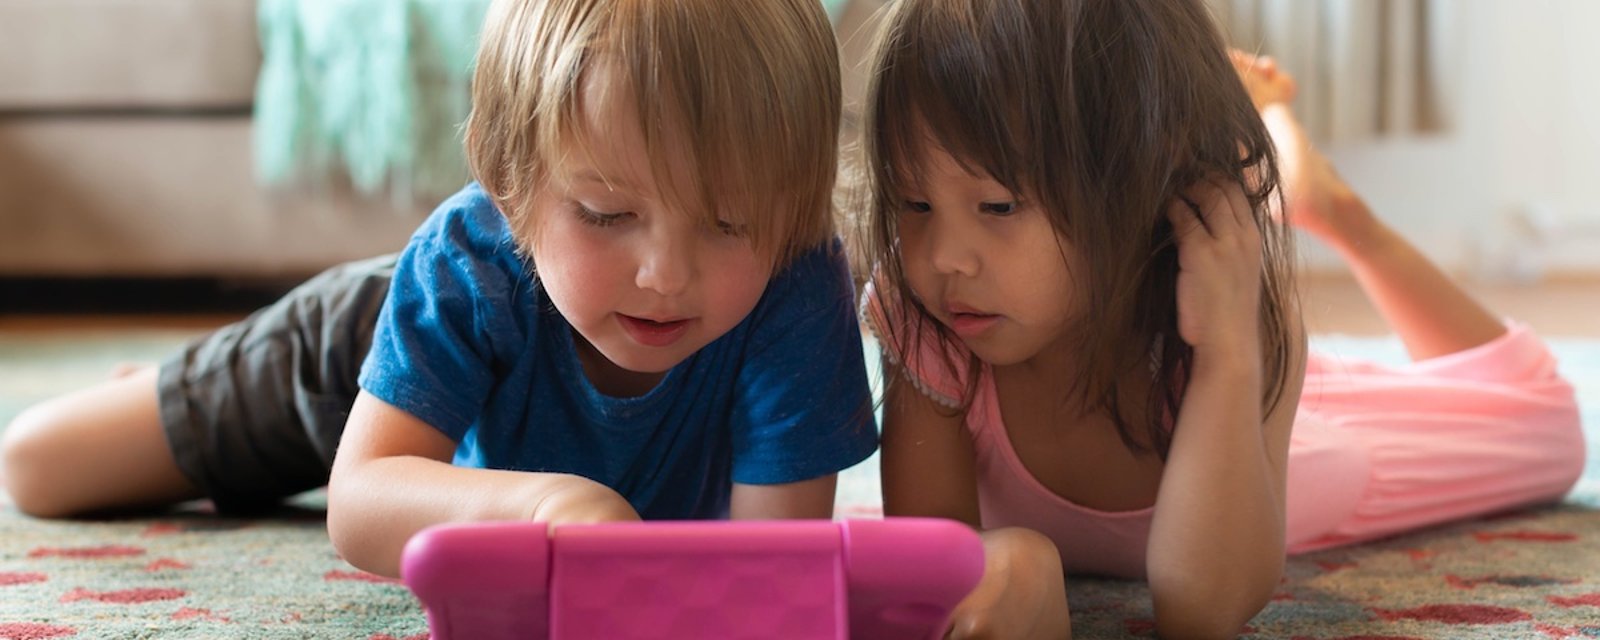 Selon des chercheurs québécois, les écrans nuisent à régulation de leurs émotions des jeunes enfants